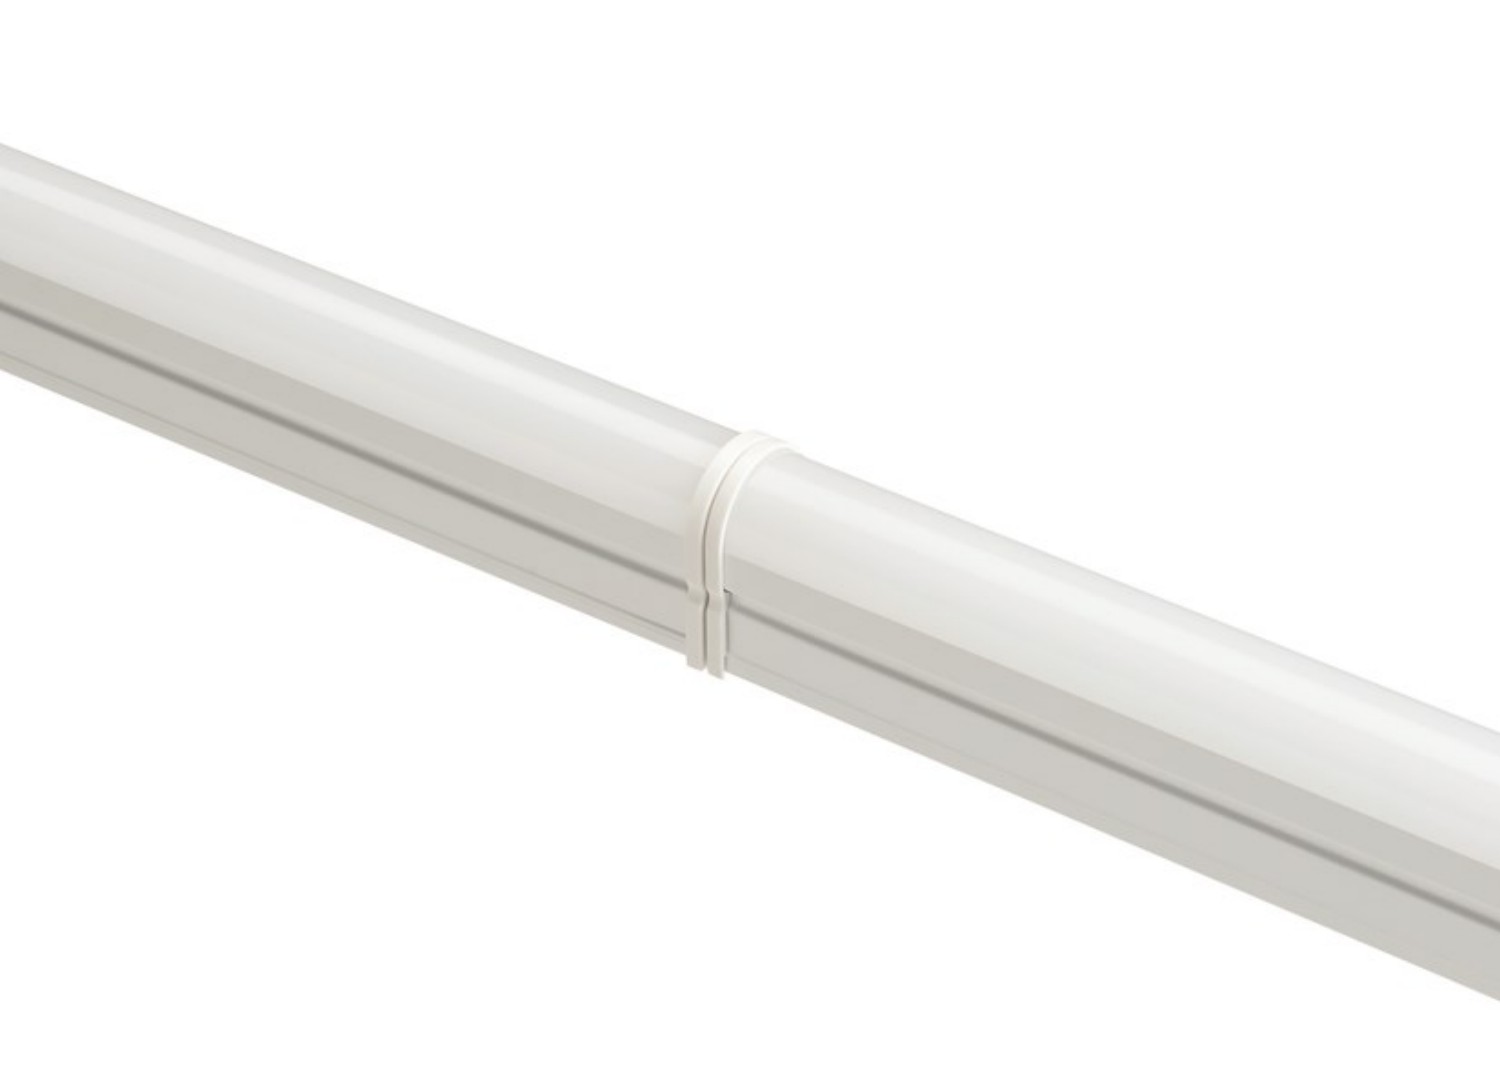 Sylvania LED Lichtleiste Pipe 14 Watt 840 neutralweiß 1200mm mit Anschlußleitung und Befestigungsclips starr und beweglich 